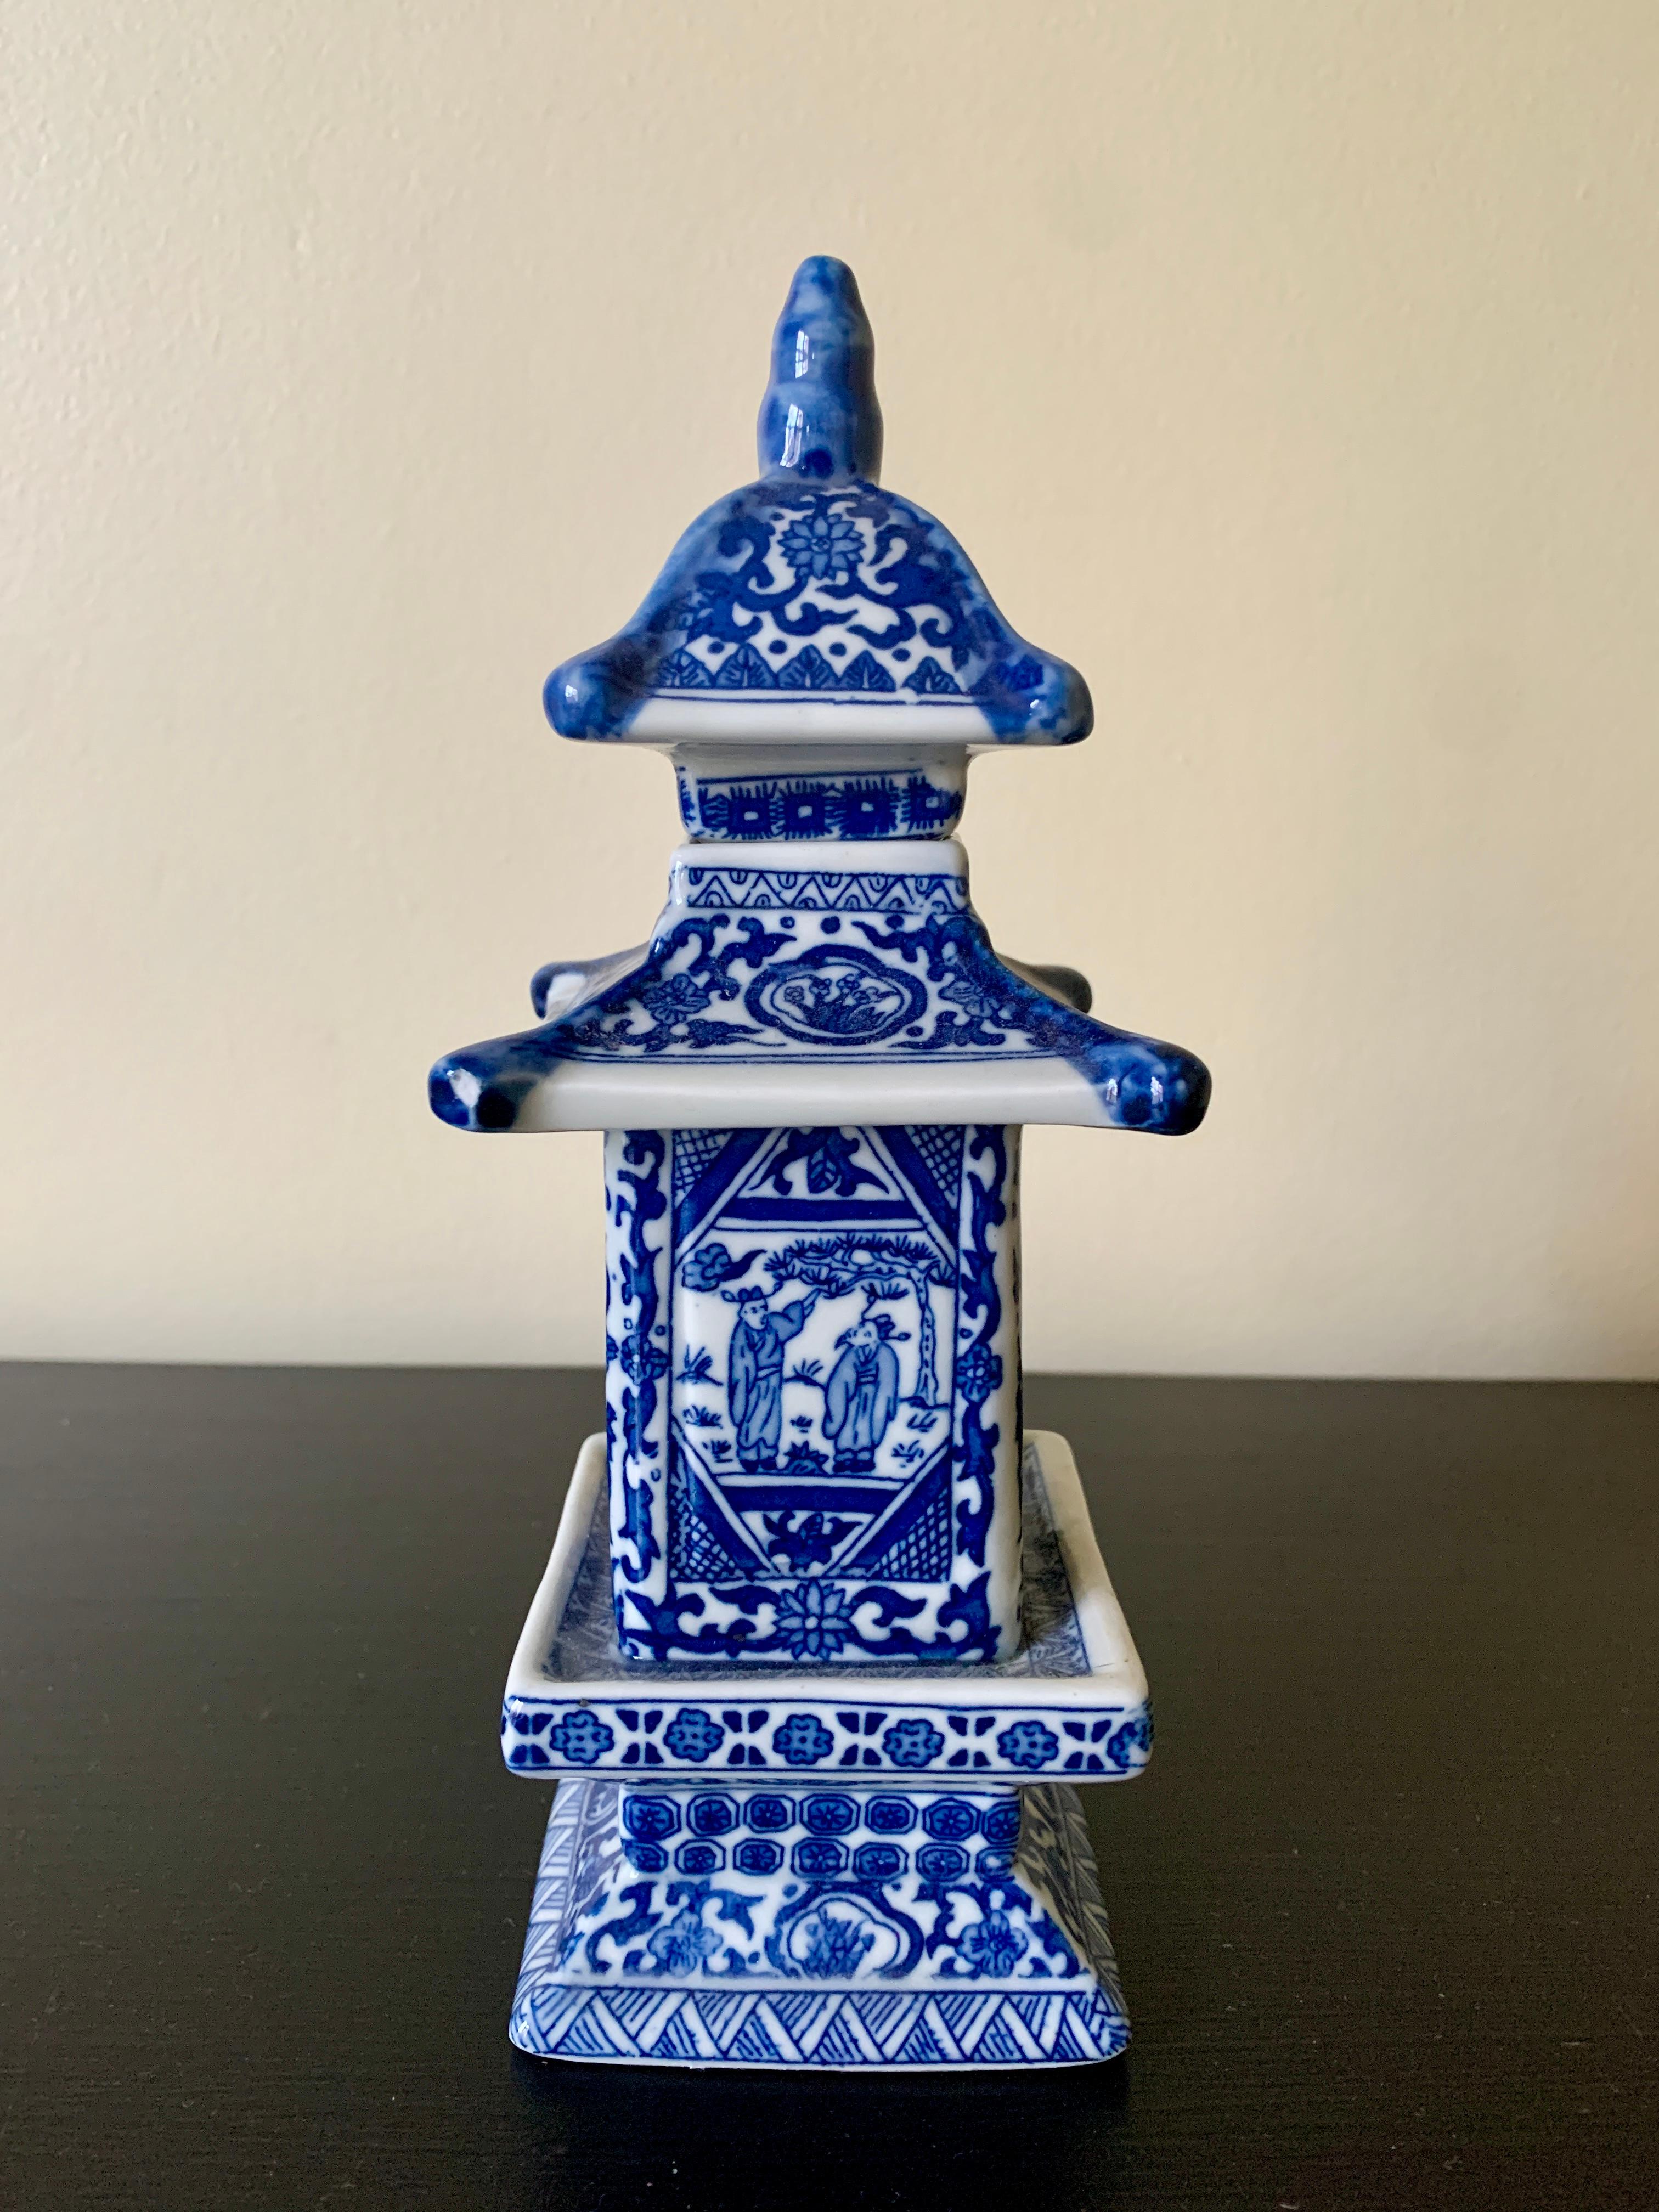 Magnifique jarre pagode en porcelaine bleue et blanche de Whiting, avec couvercle amovible.

Chine, début du 21e siècle

Mesures : 2,75 